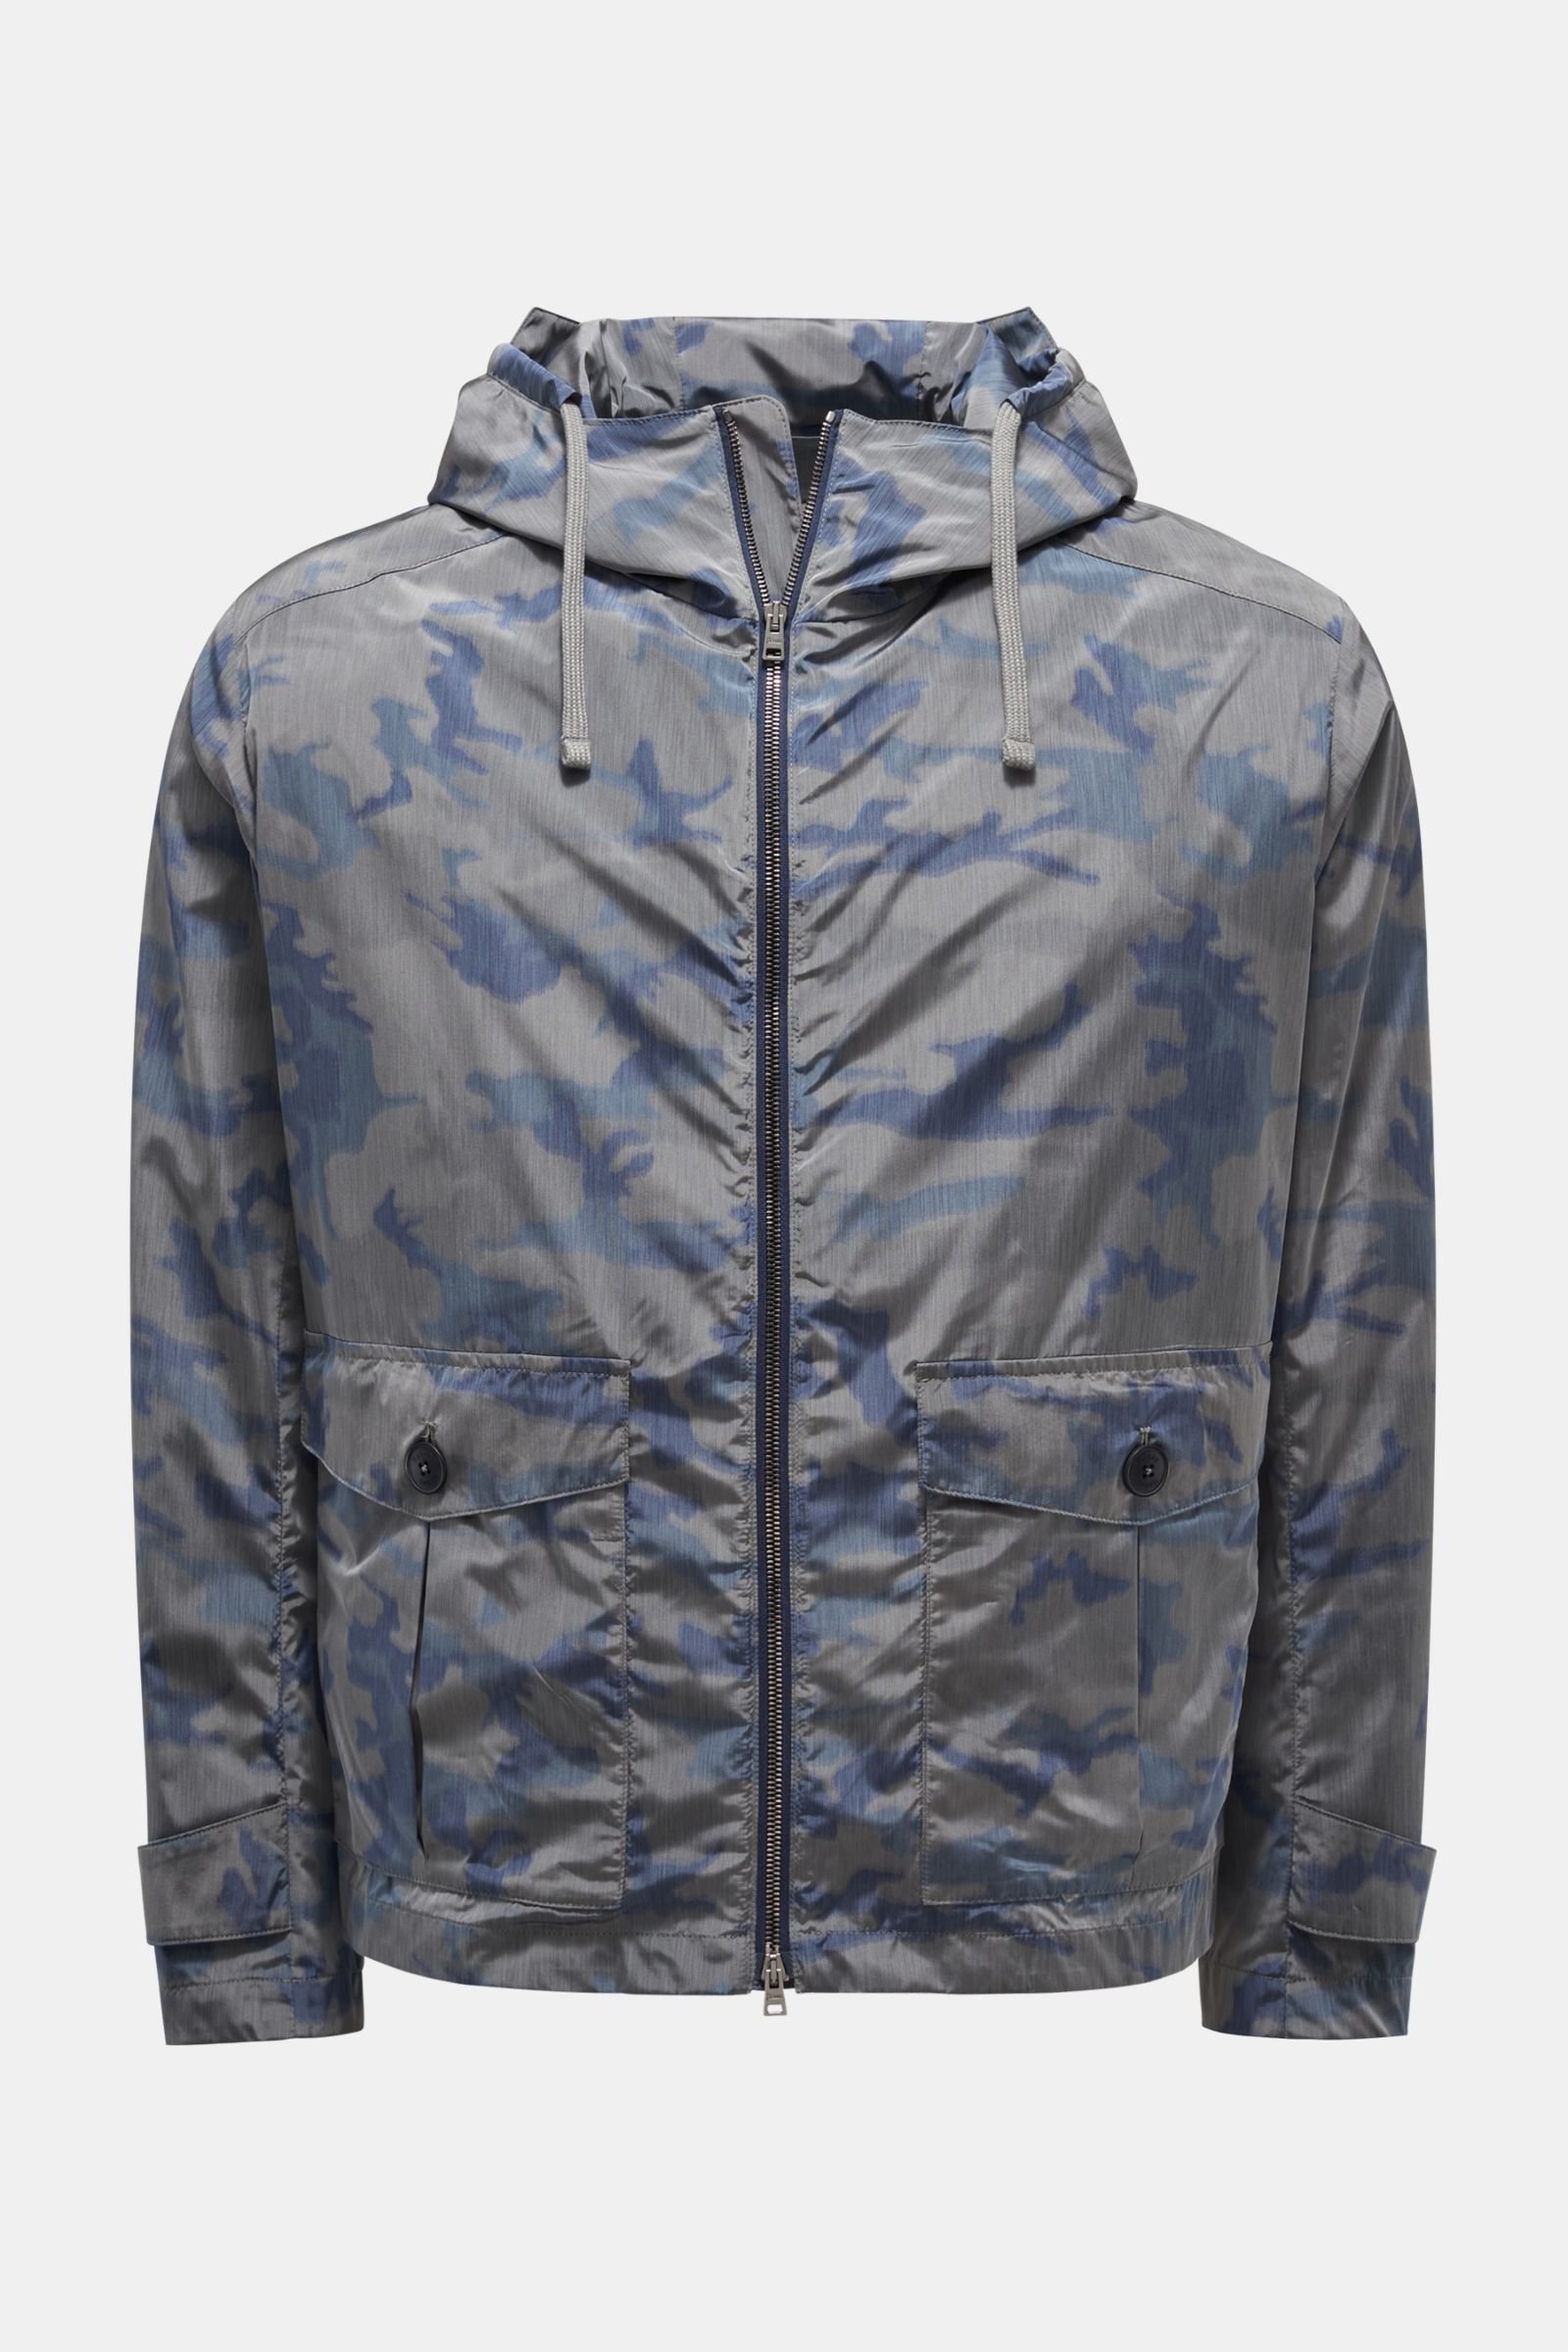 Coat grey-blue/dark blue patterned